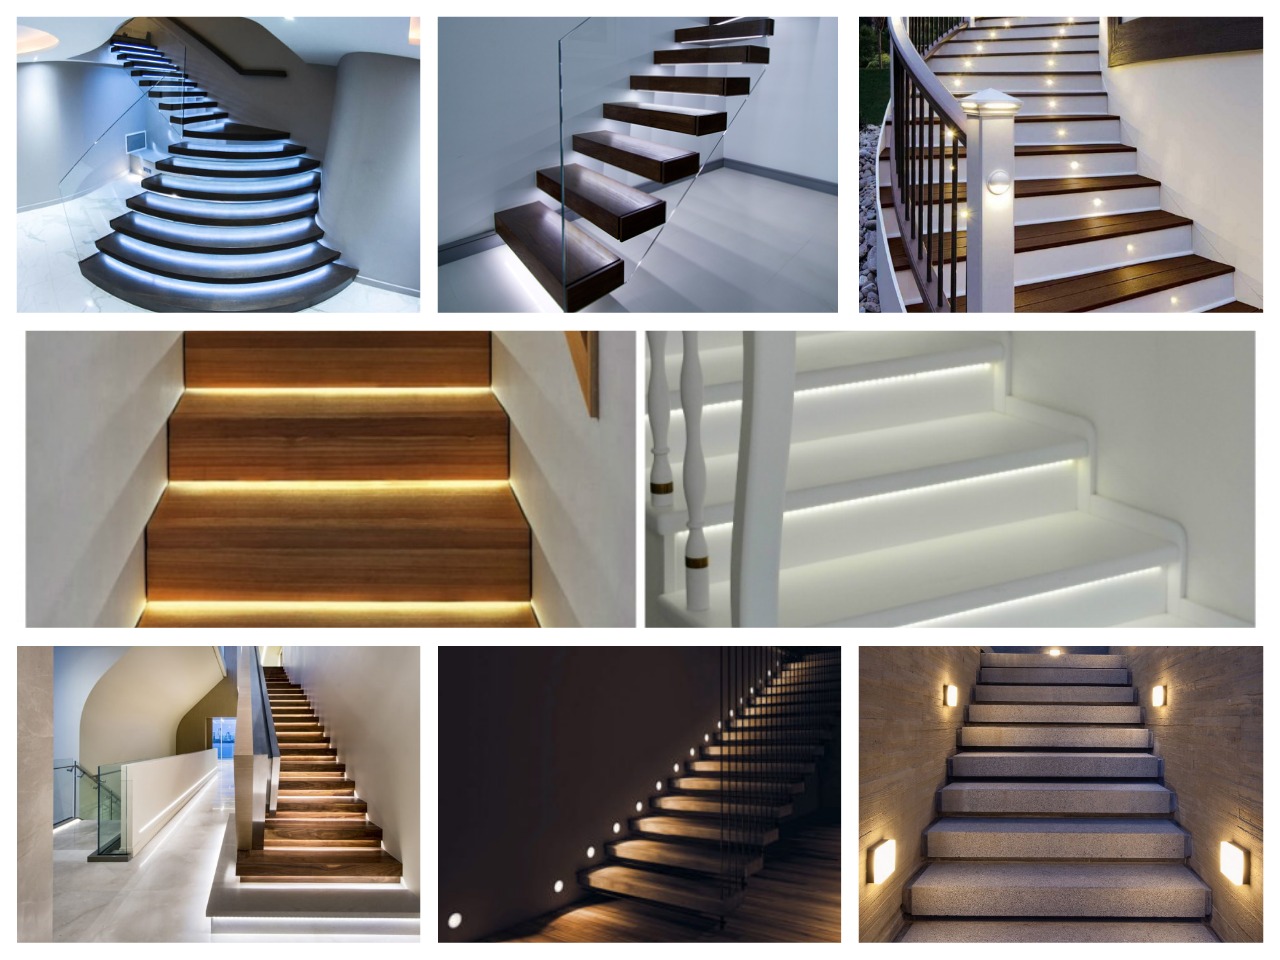 8 фото идей реализации подсветки ступеней лестницы разными лампами, разноцветными светодиодами.